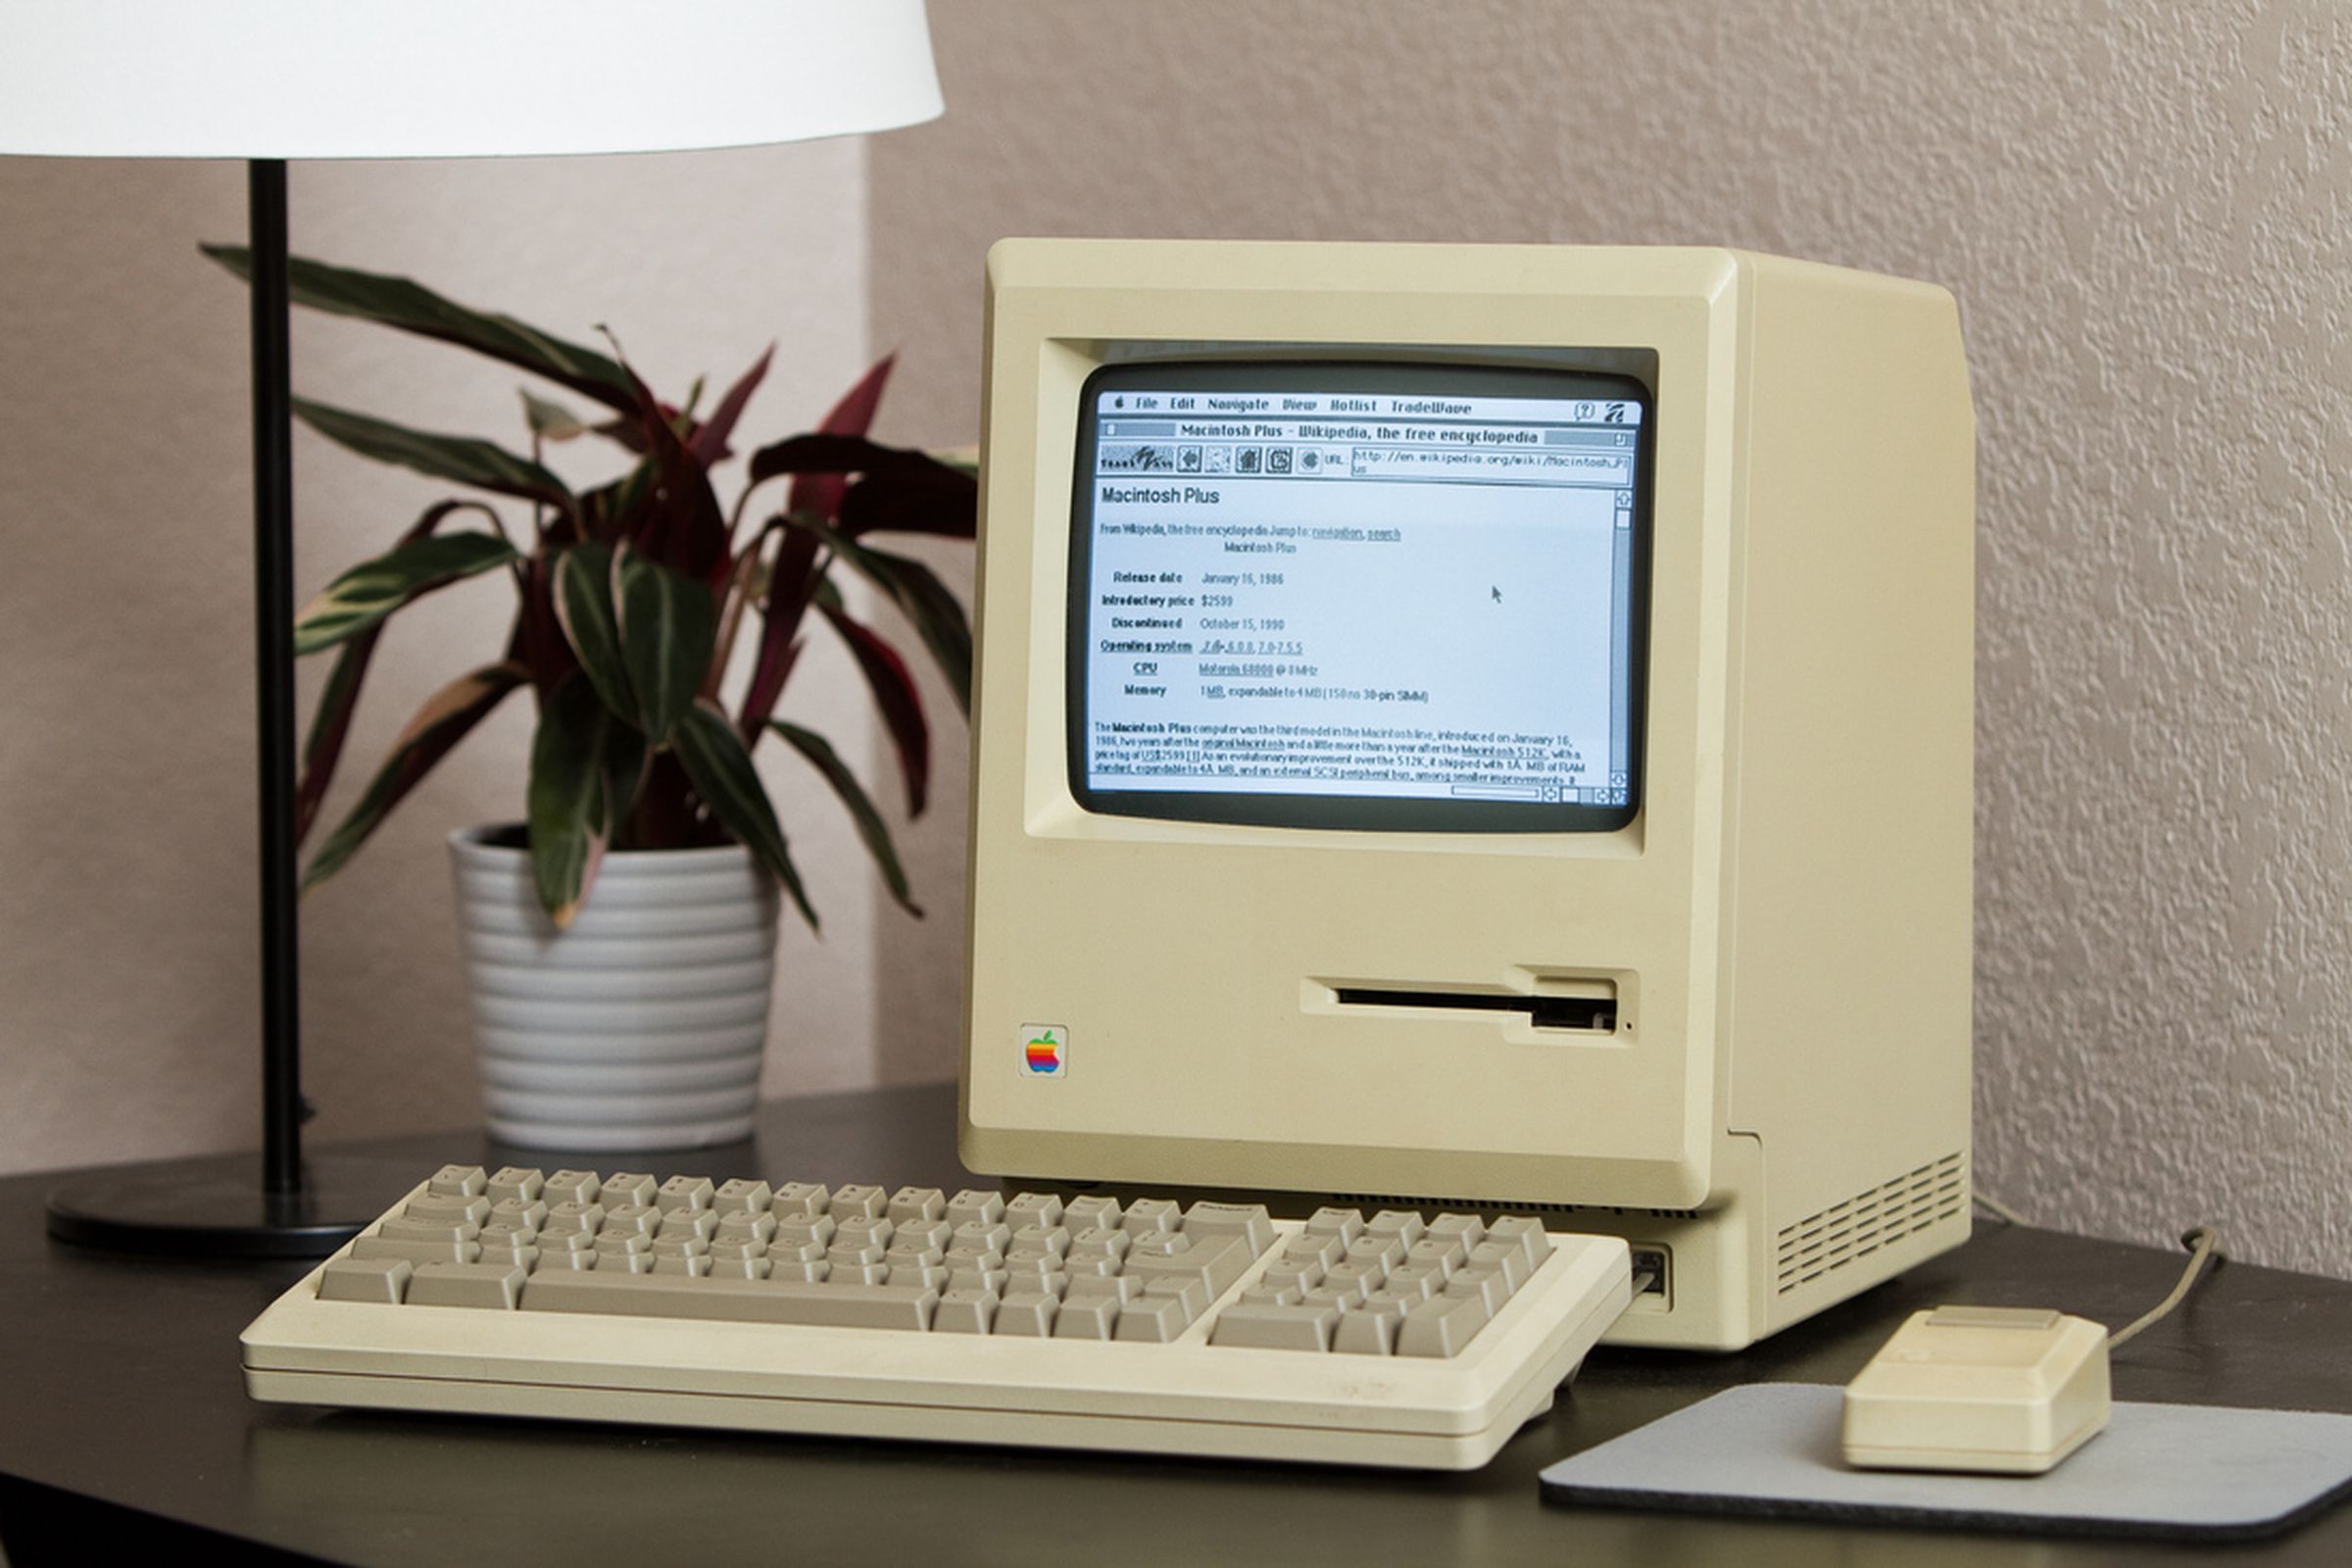 Mac Plus on the web (Jeff Keacher)